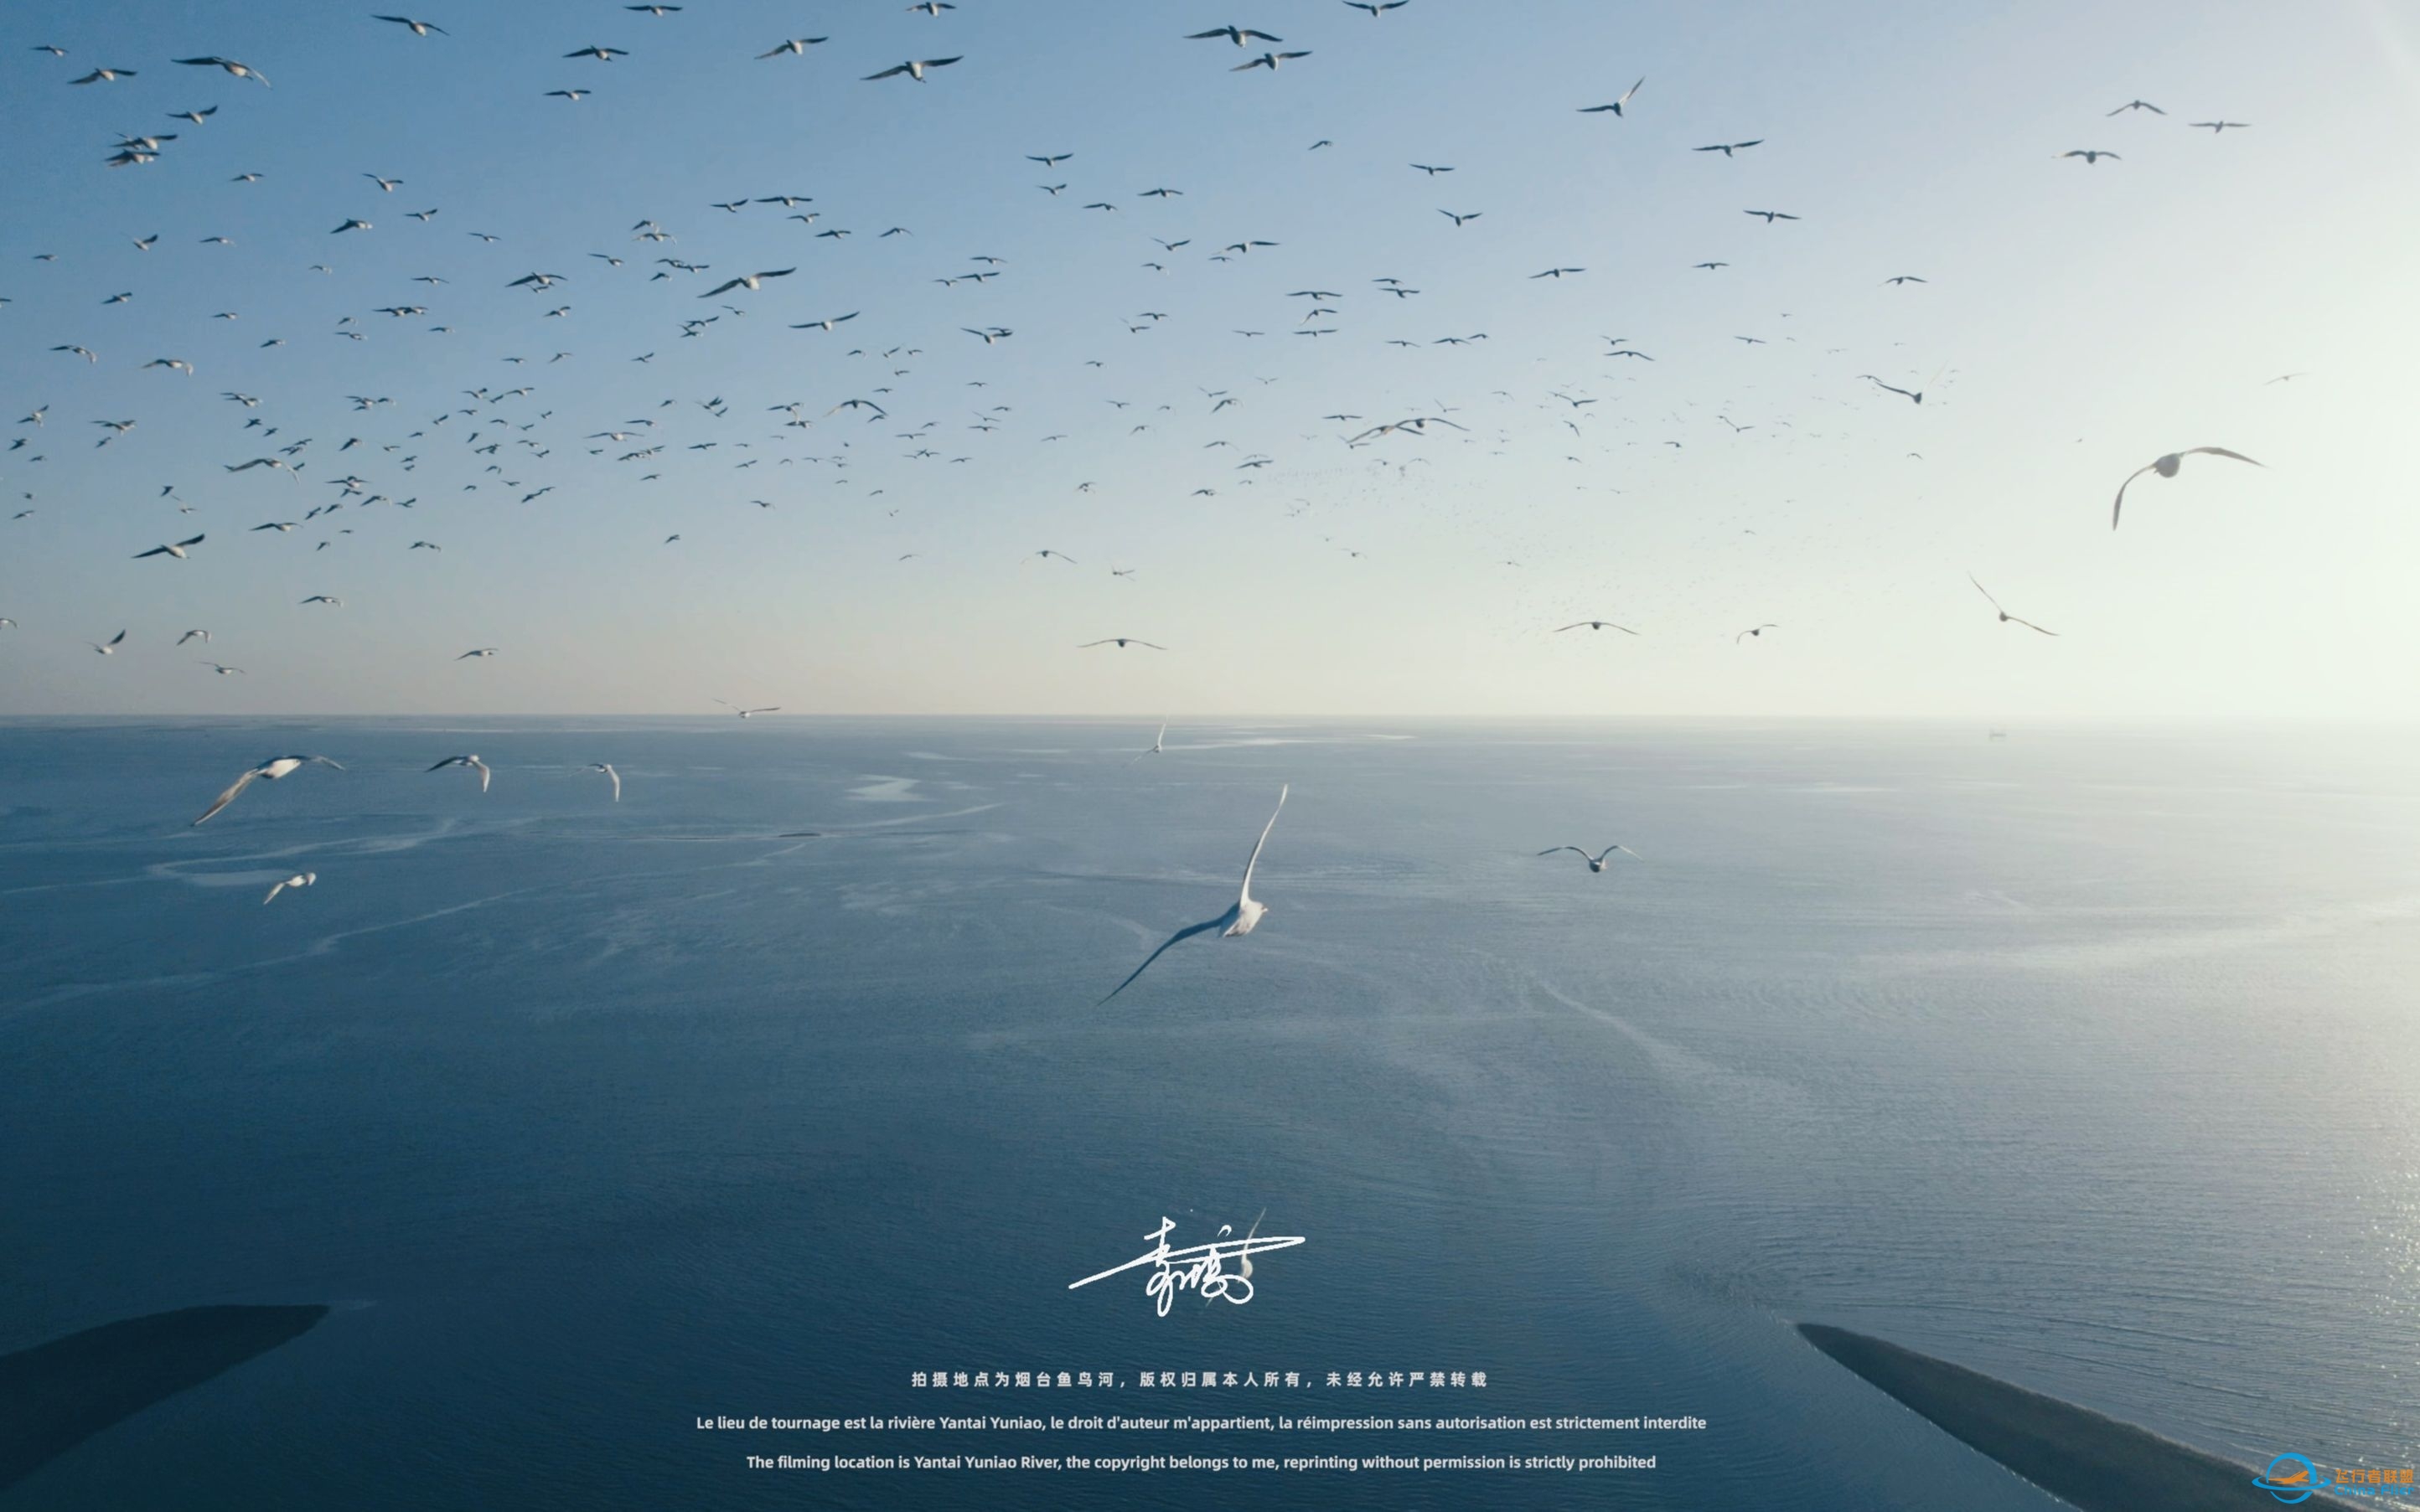 【沉浸式飞行】[DJI AIR 2S]一次跟海鸥一起的沉浸式飞行体验~-5305 